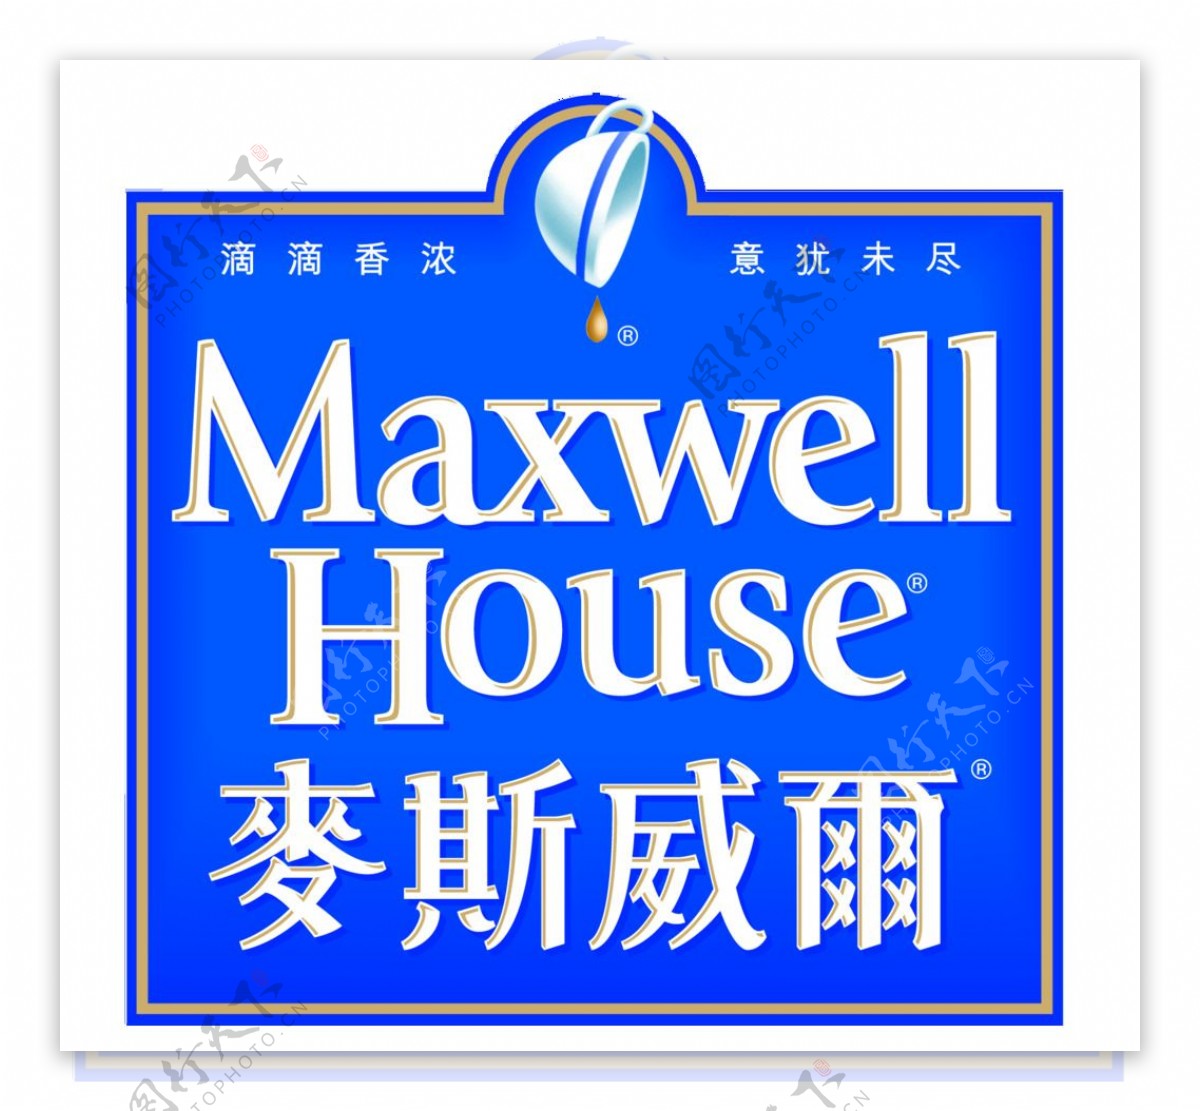 麦斯威尔logo